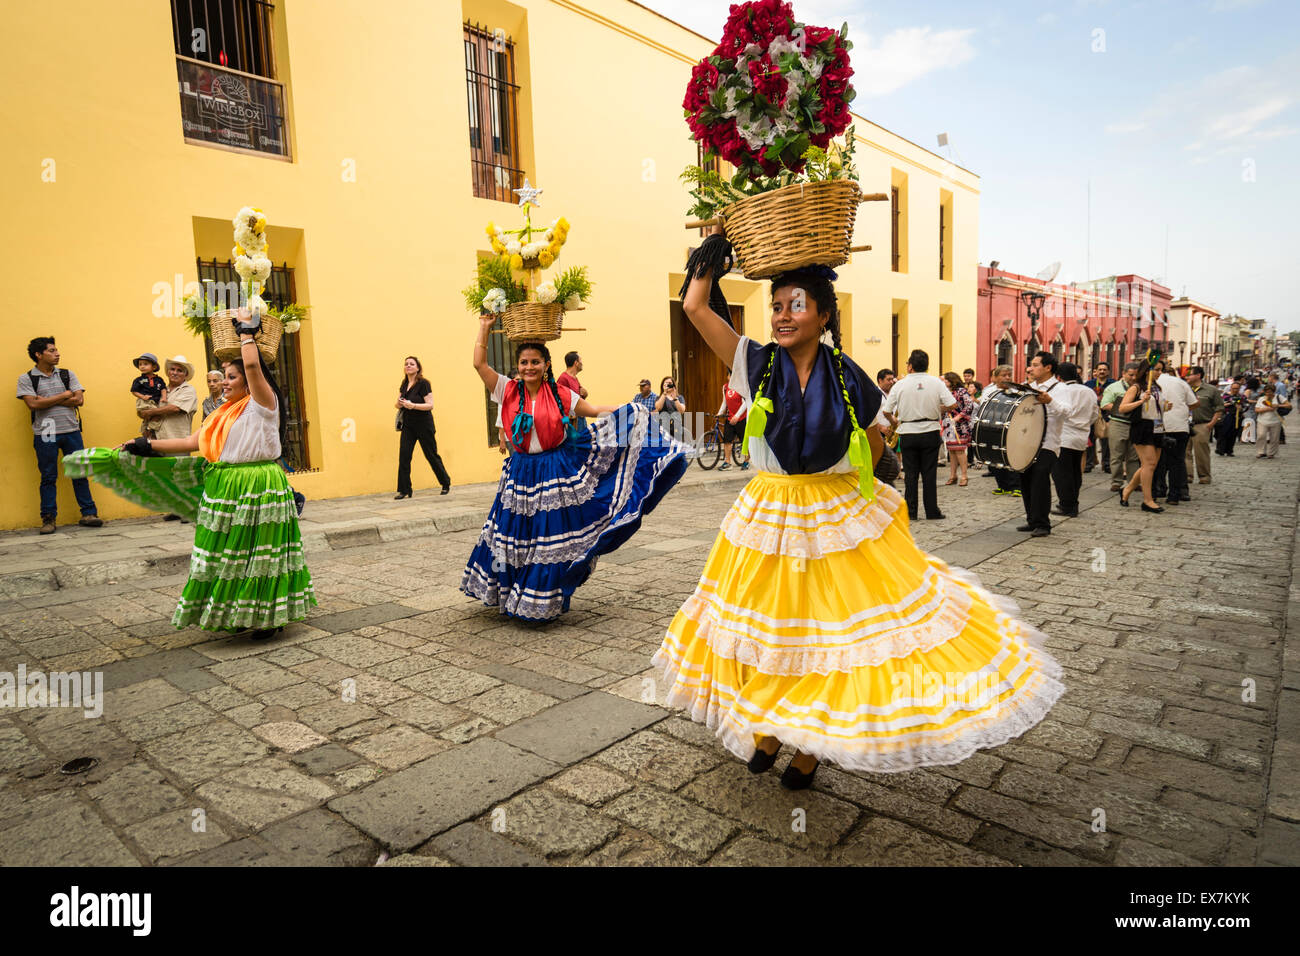 Frauen in traditionellen Kostümen tanzen und Durchführung Blumenkörbe auf ihren Köpfen führt eine Parade auf einem Festival in Oaxaca, Mexiko Stockfoto